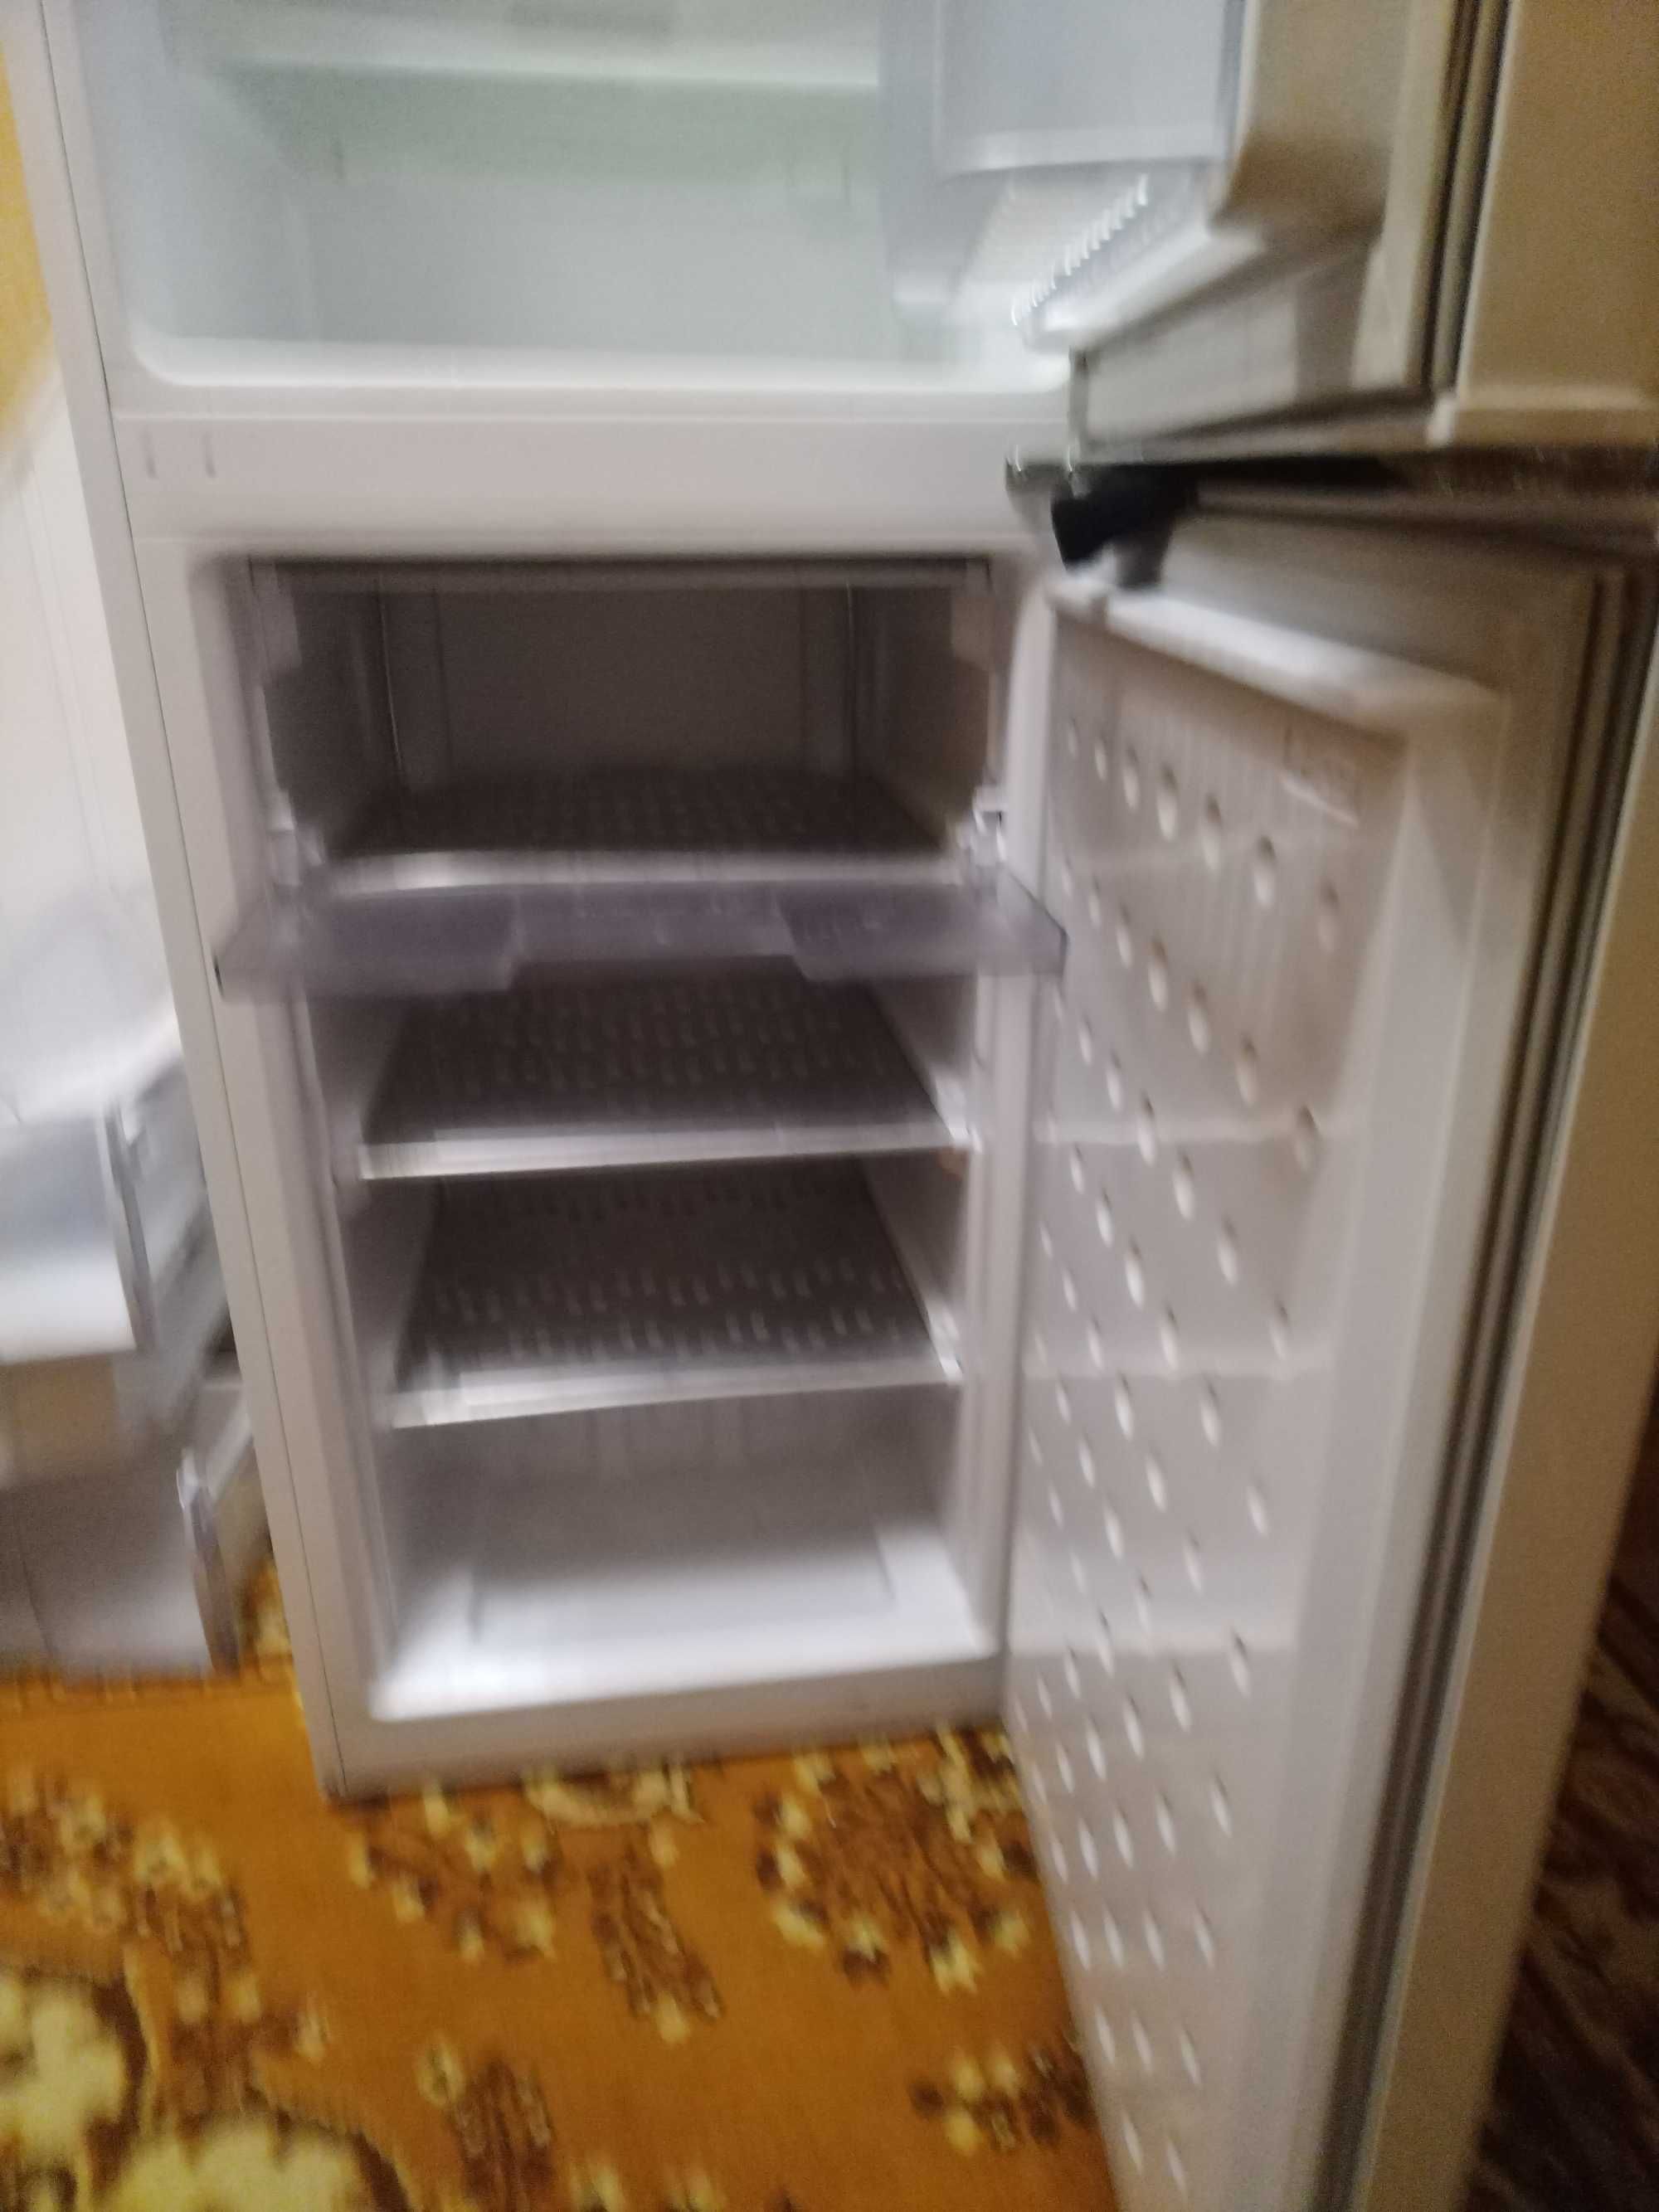 Продается двухкамерный холодильник BEKO CS 335020